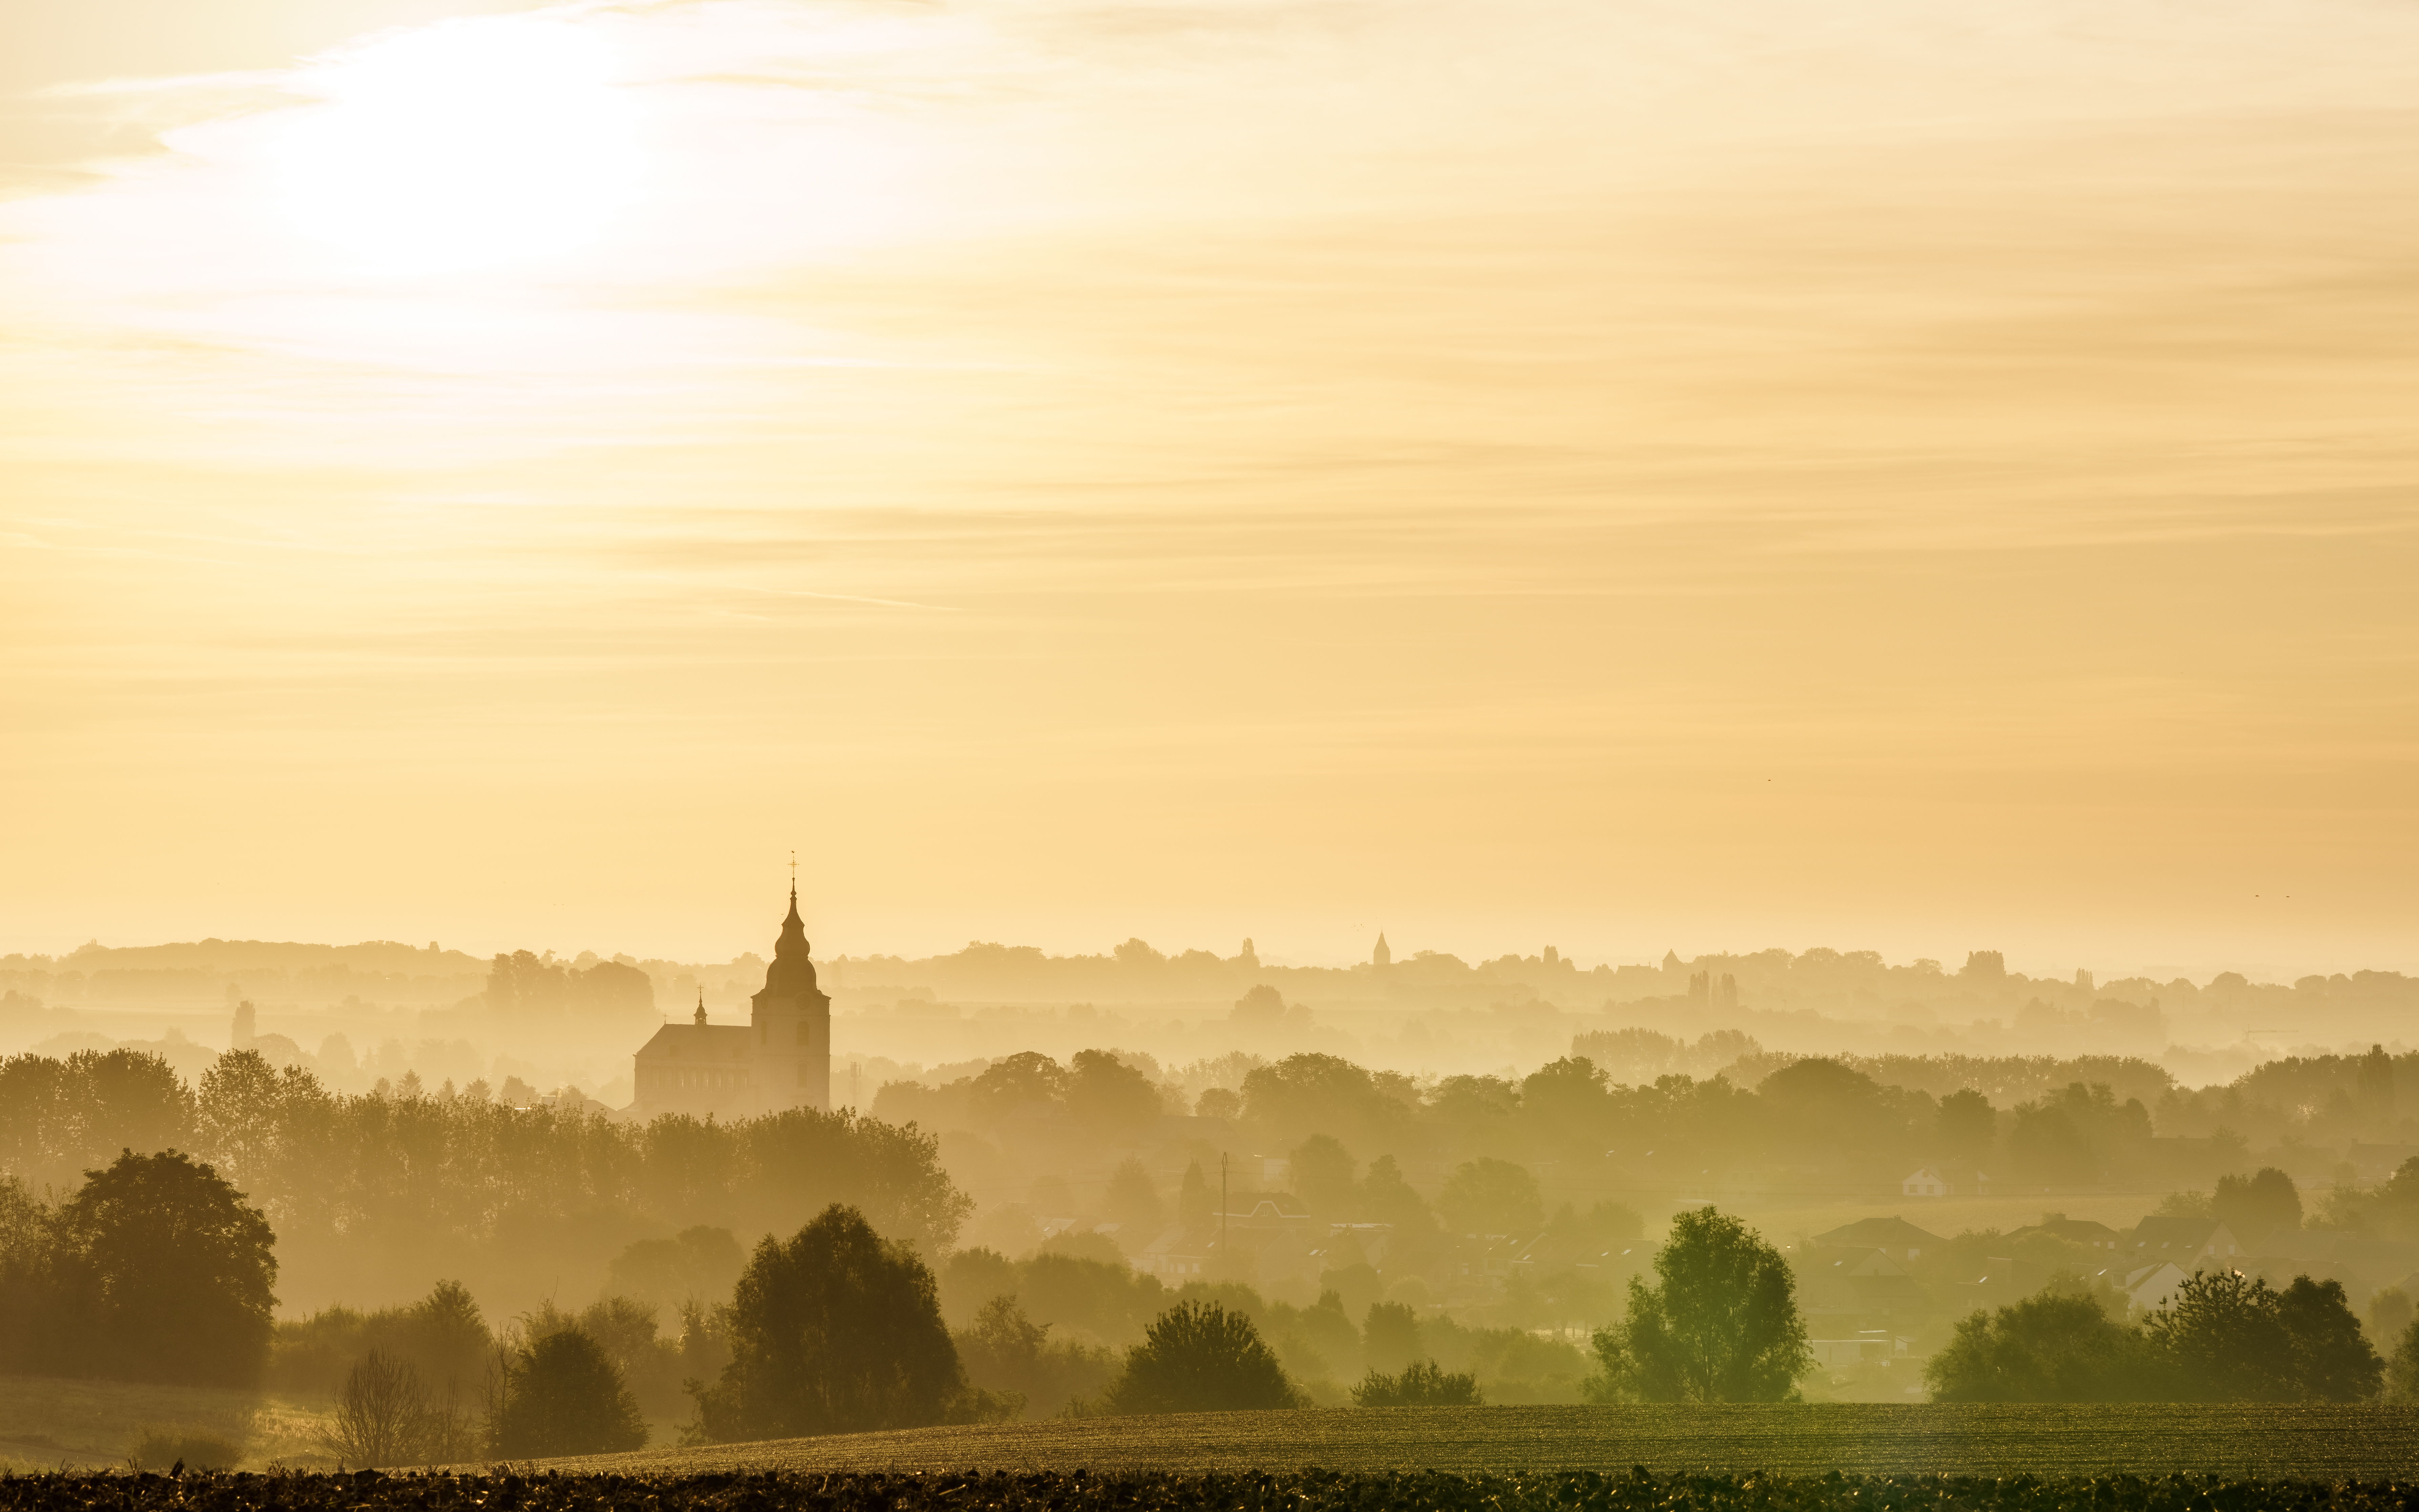 Het landschap rond Hoegaarden in de Getevallei (copyright: Pieter-Jan Alles)